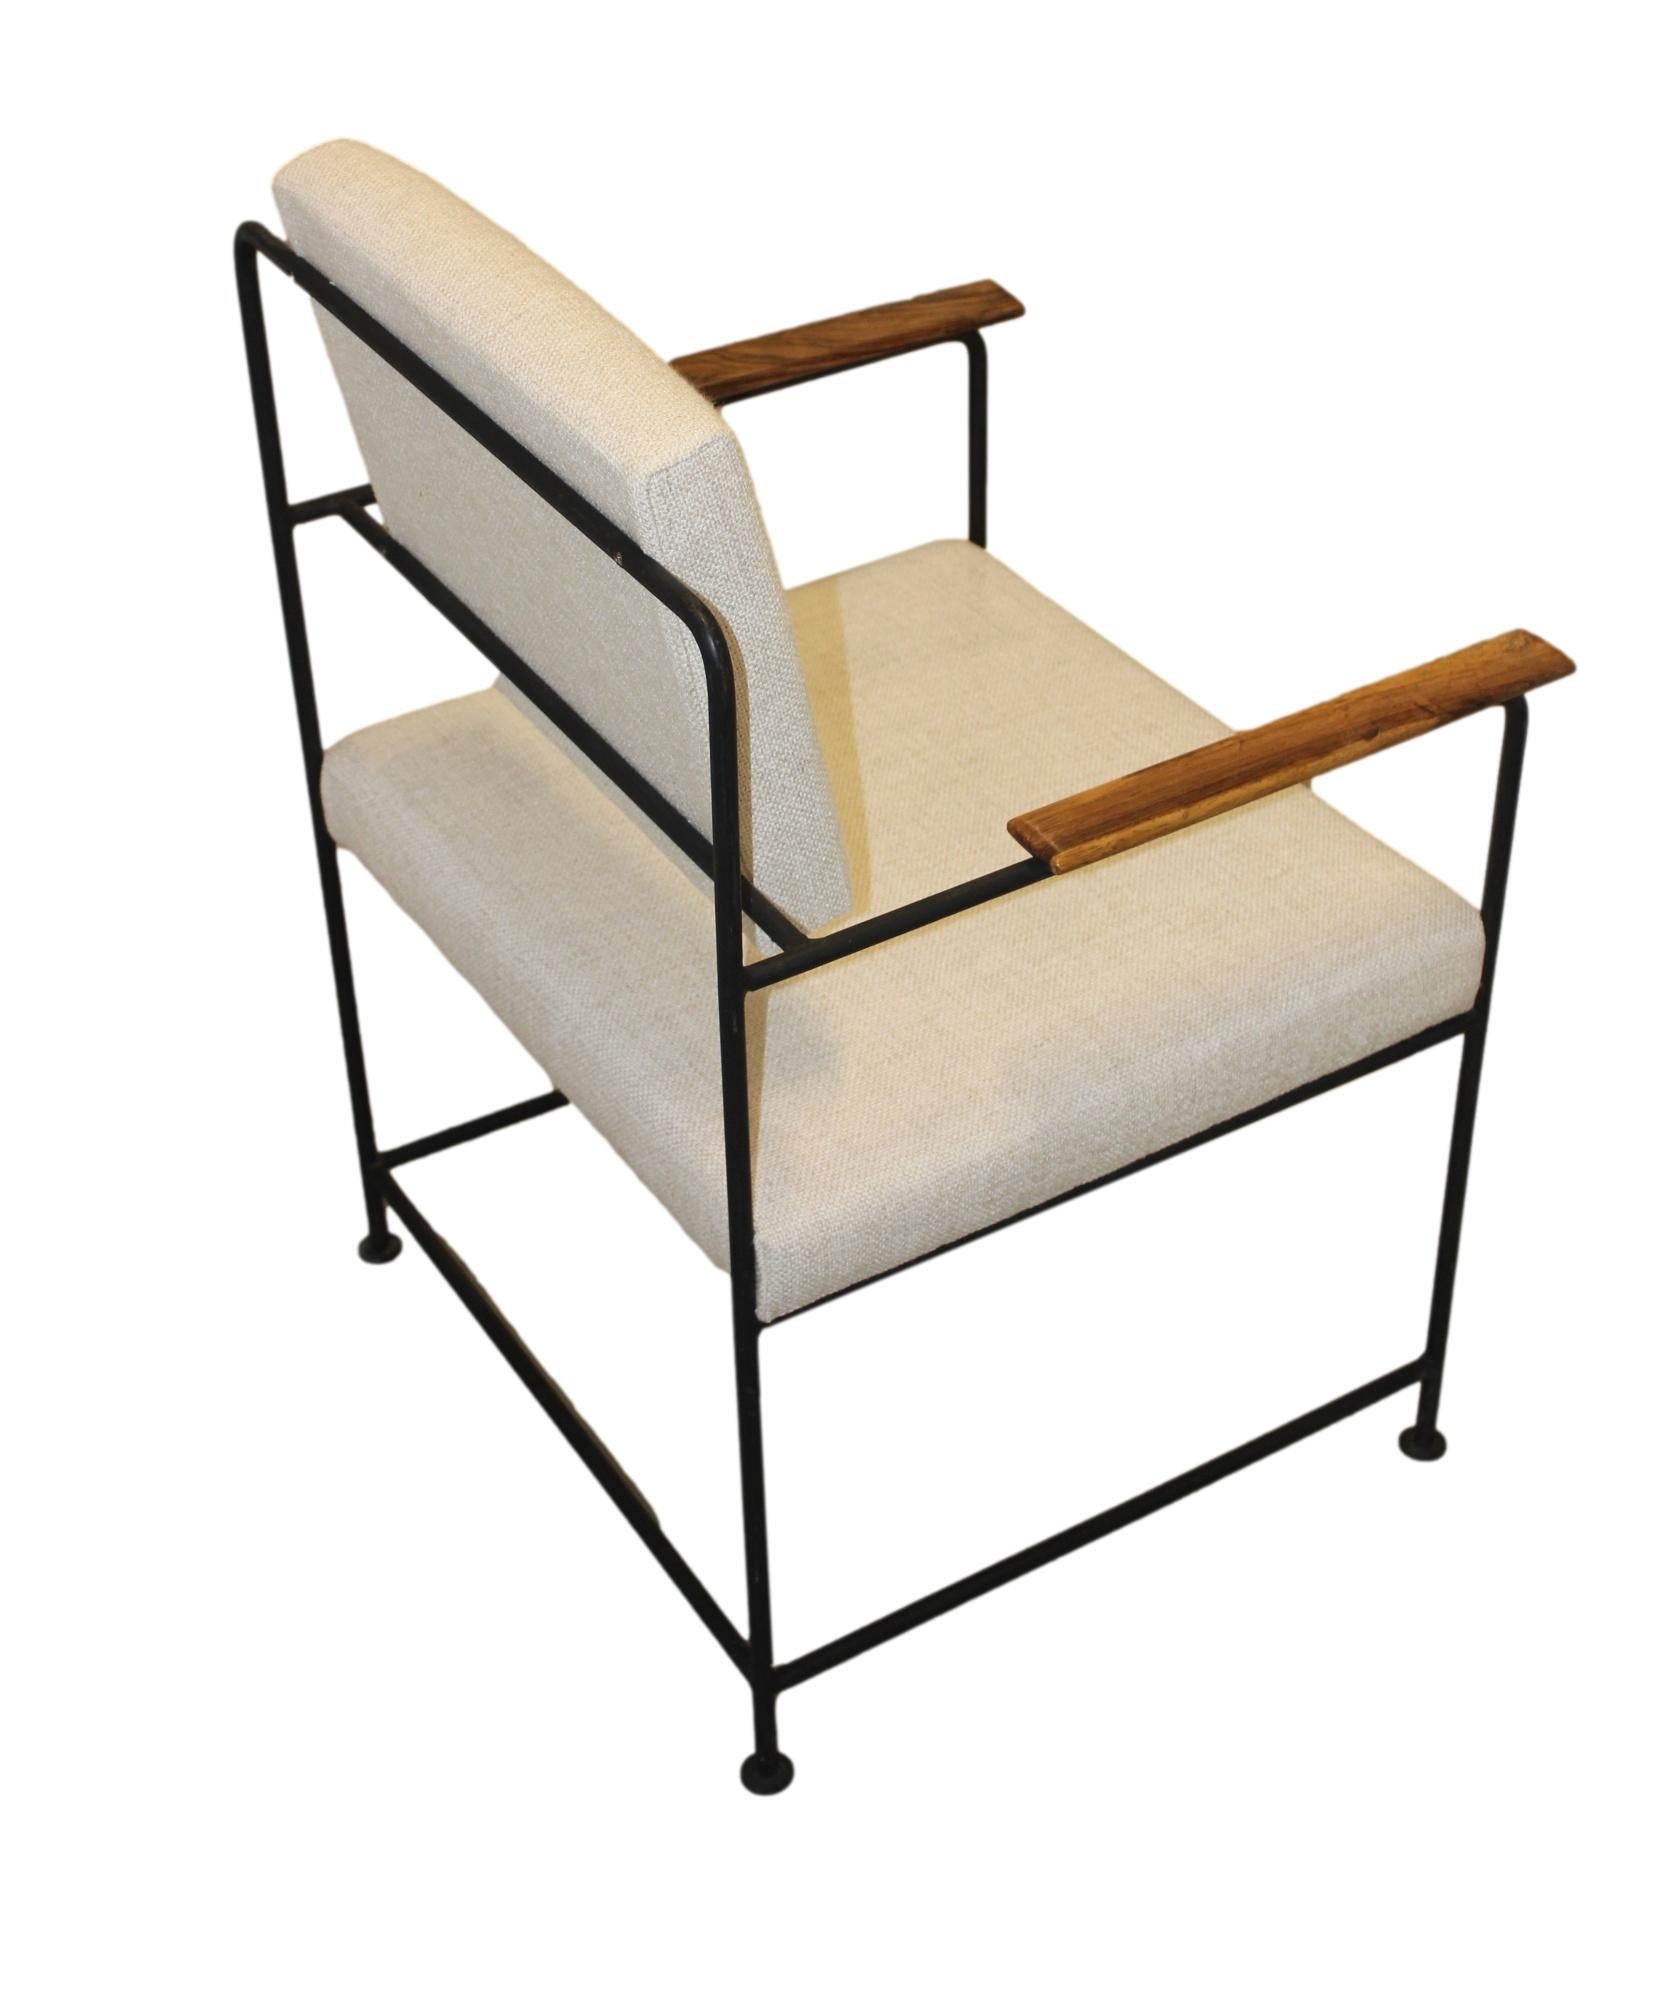 Geraldo de Barros (1923-1998)

Ensemble de deux pièces en fer  fauteuil
Fabriqué par Unilabor
Brésil, 1955.
Structure en fer, revêtement en tissu.

Mesures :
55 cm x 65 cm x 75 h cm
21.6 in x 25.59 in x 29.5 H in.

Littérature
Unilabor, par Mauro